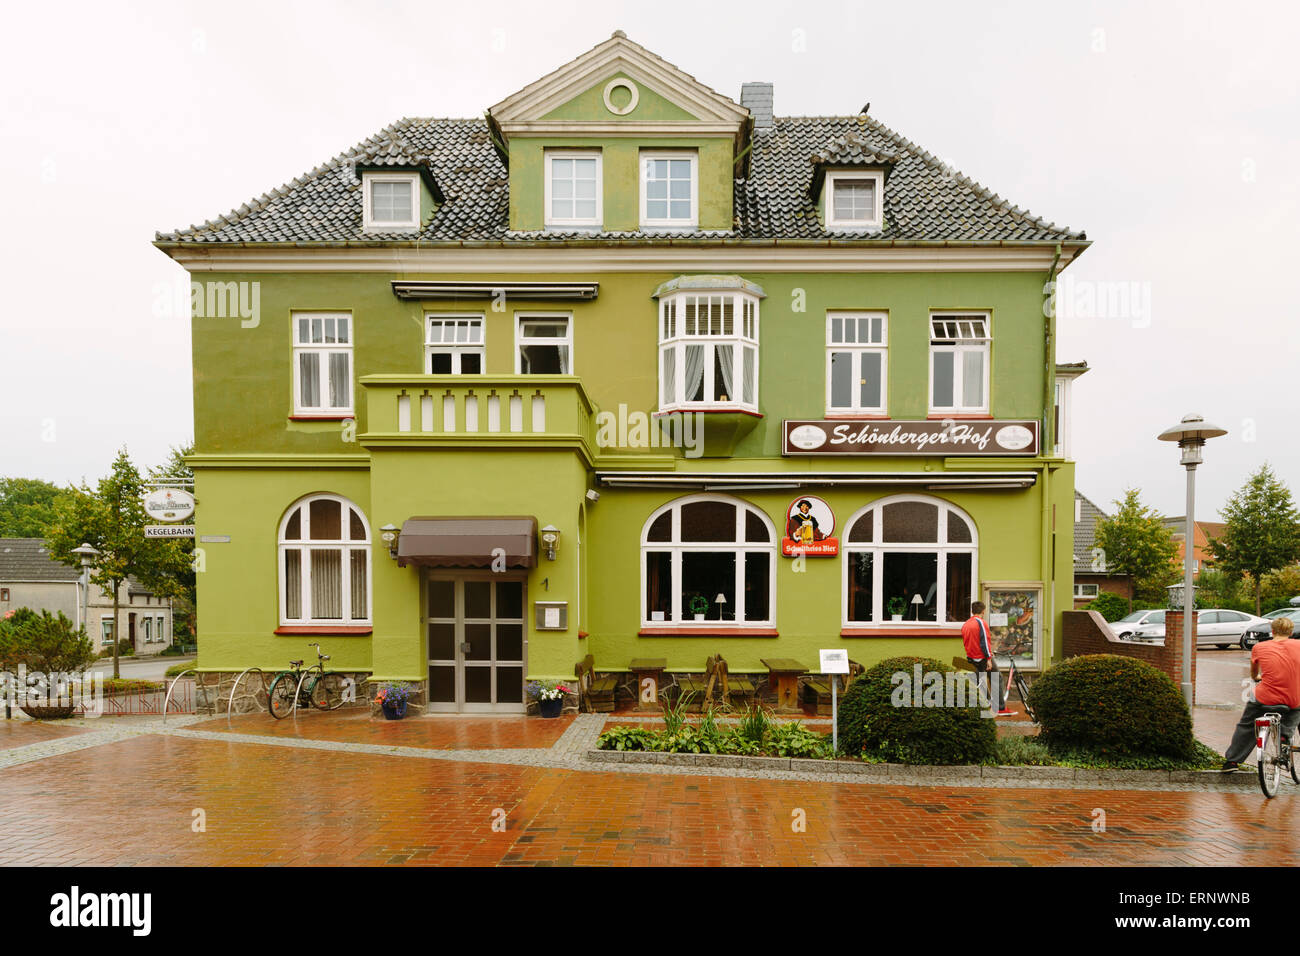 Schonberger Hof, Schonberg, Probstei, Plon district, Schleswig-Holstein, Germany Stock Photo